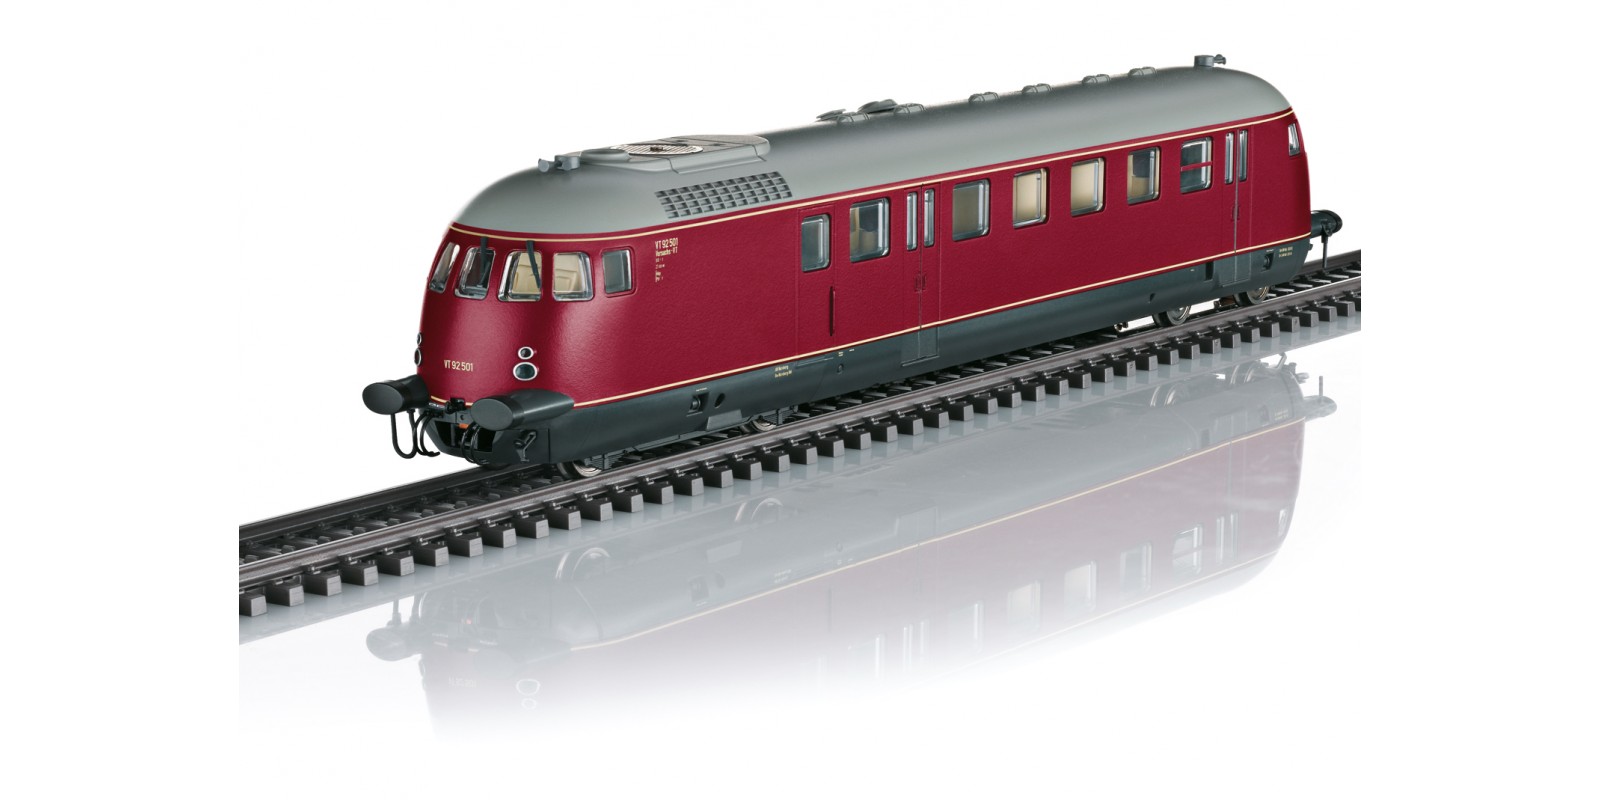 39692 Class VT 92.5 Diesel-Powered Rail Car